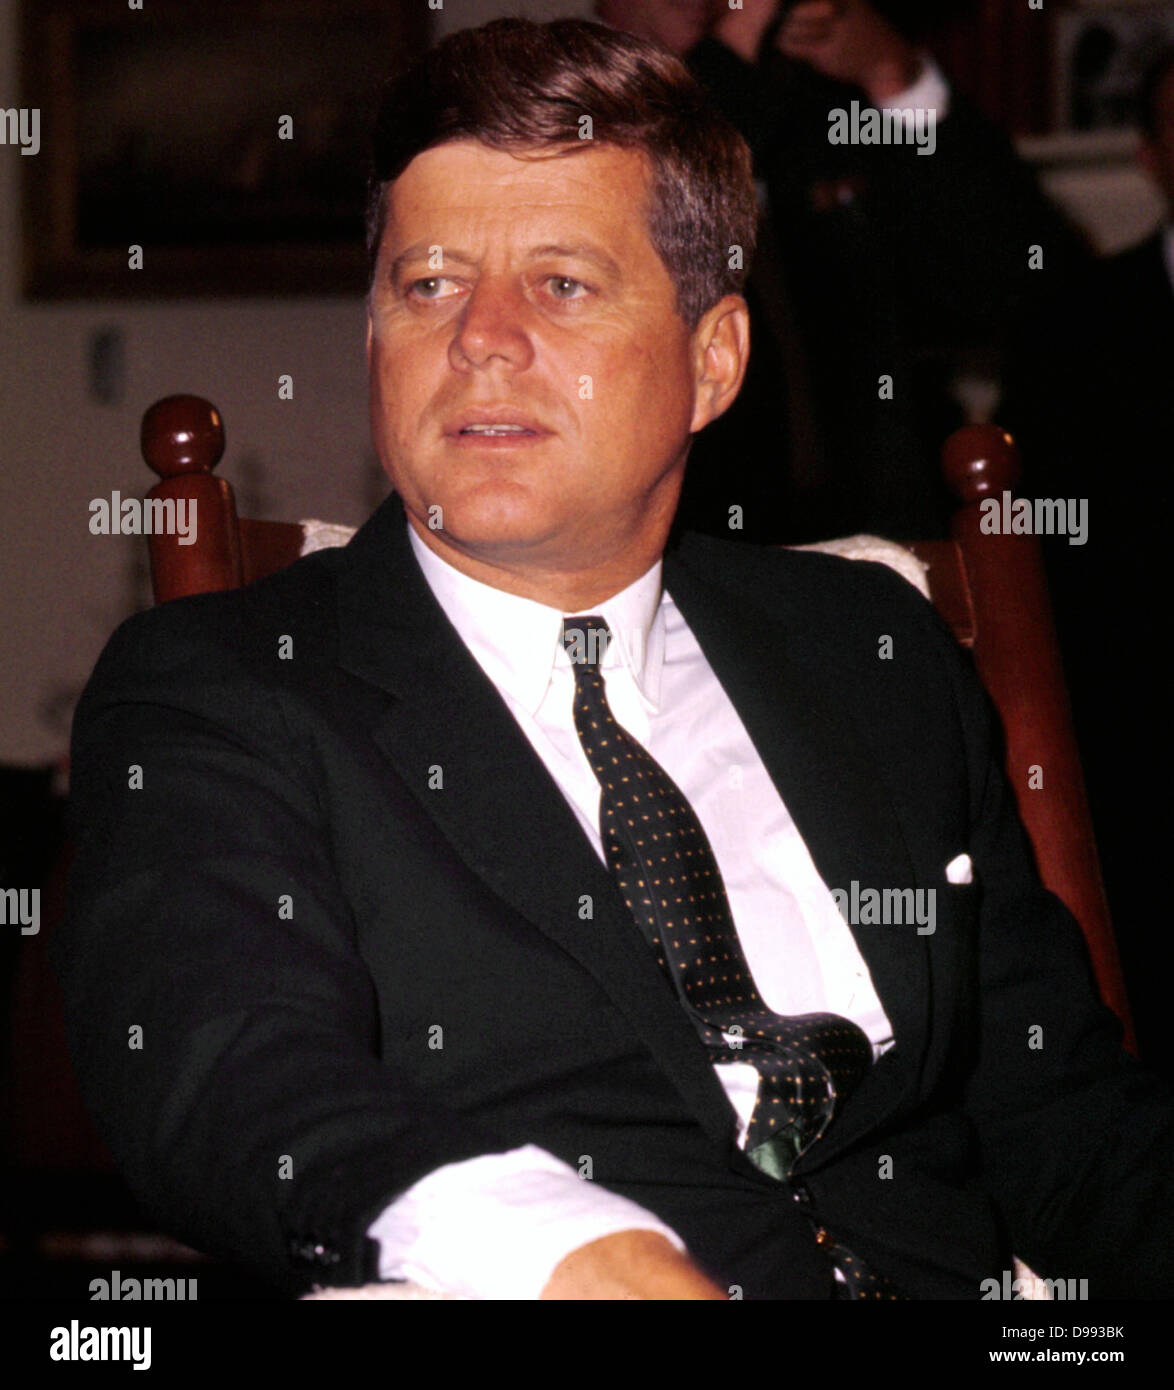 John Fitzgerald Kennedy (29 mai 1917 - 22 novembre 1963), 35e président des États-Unis, de 1961 jusqu'à son assassinat en 1963. Banque D'Images